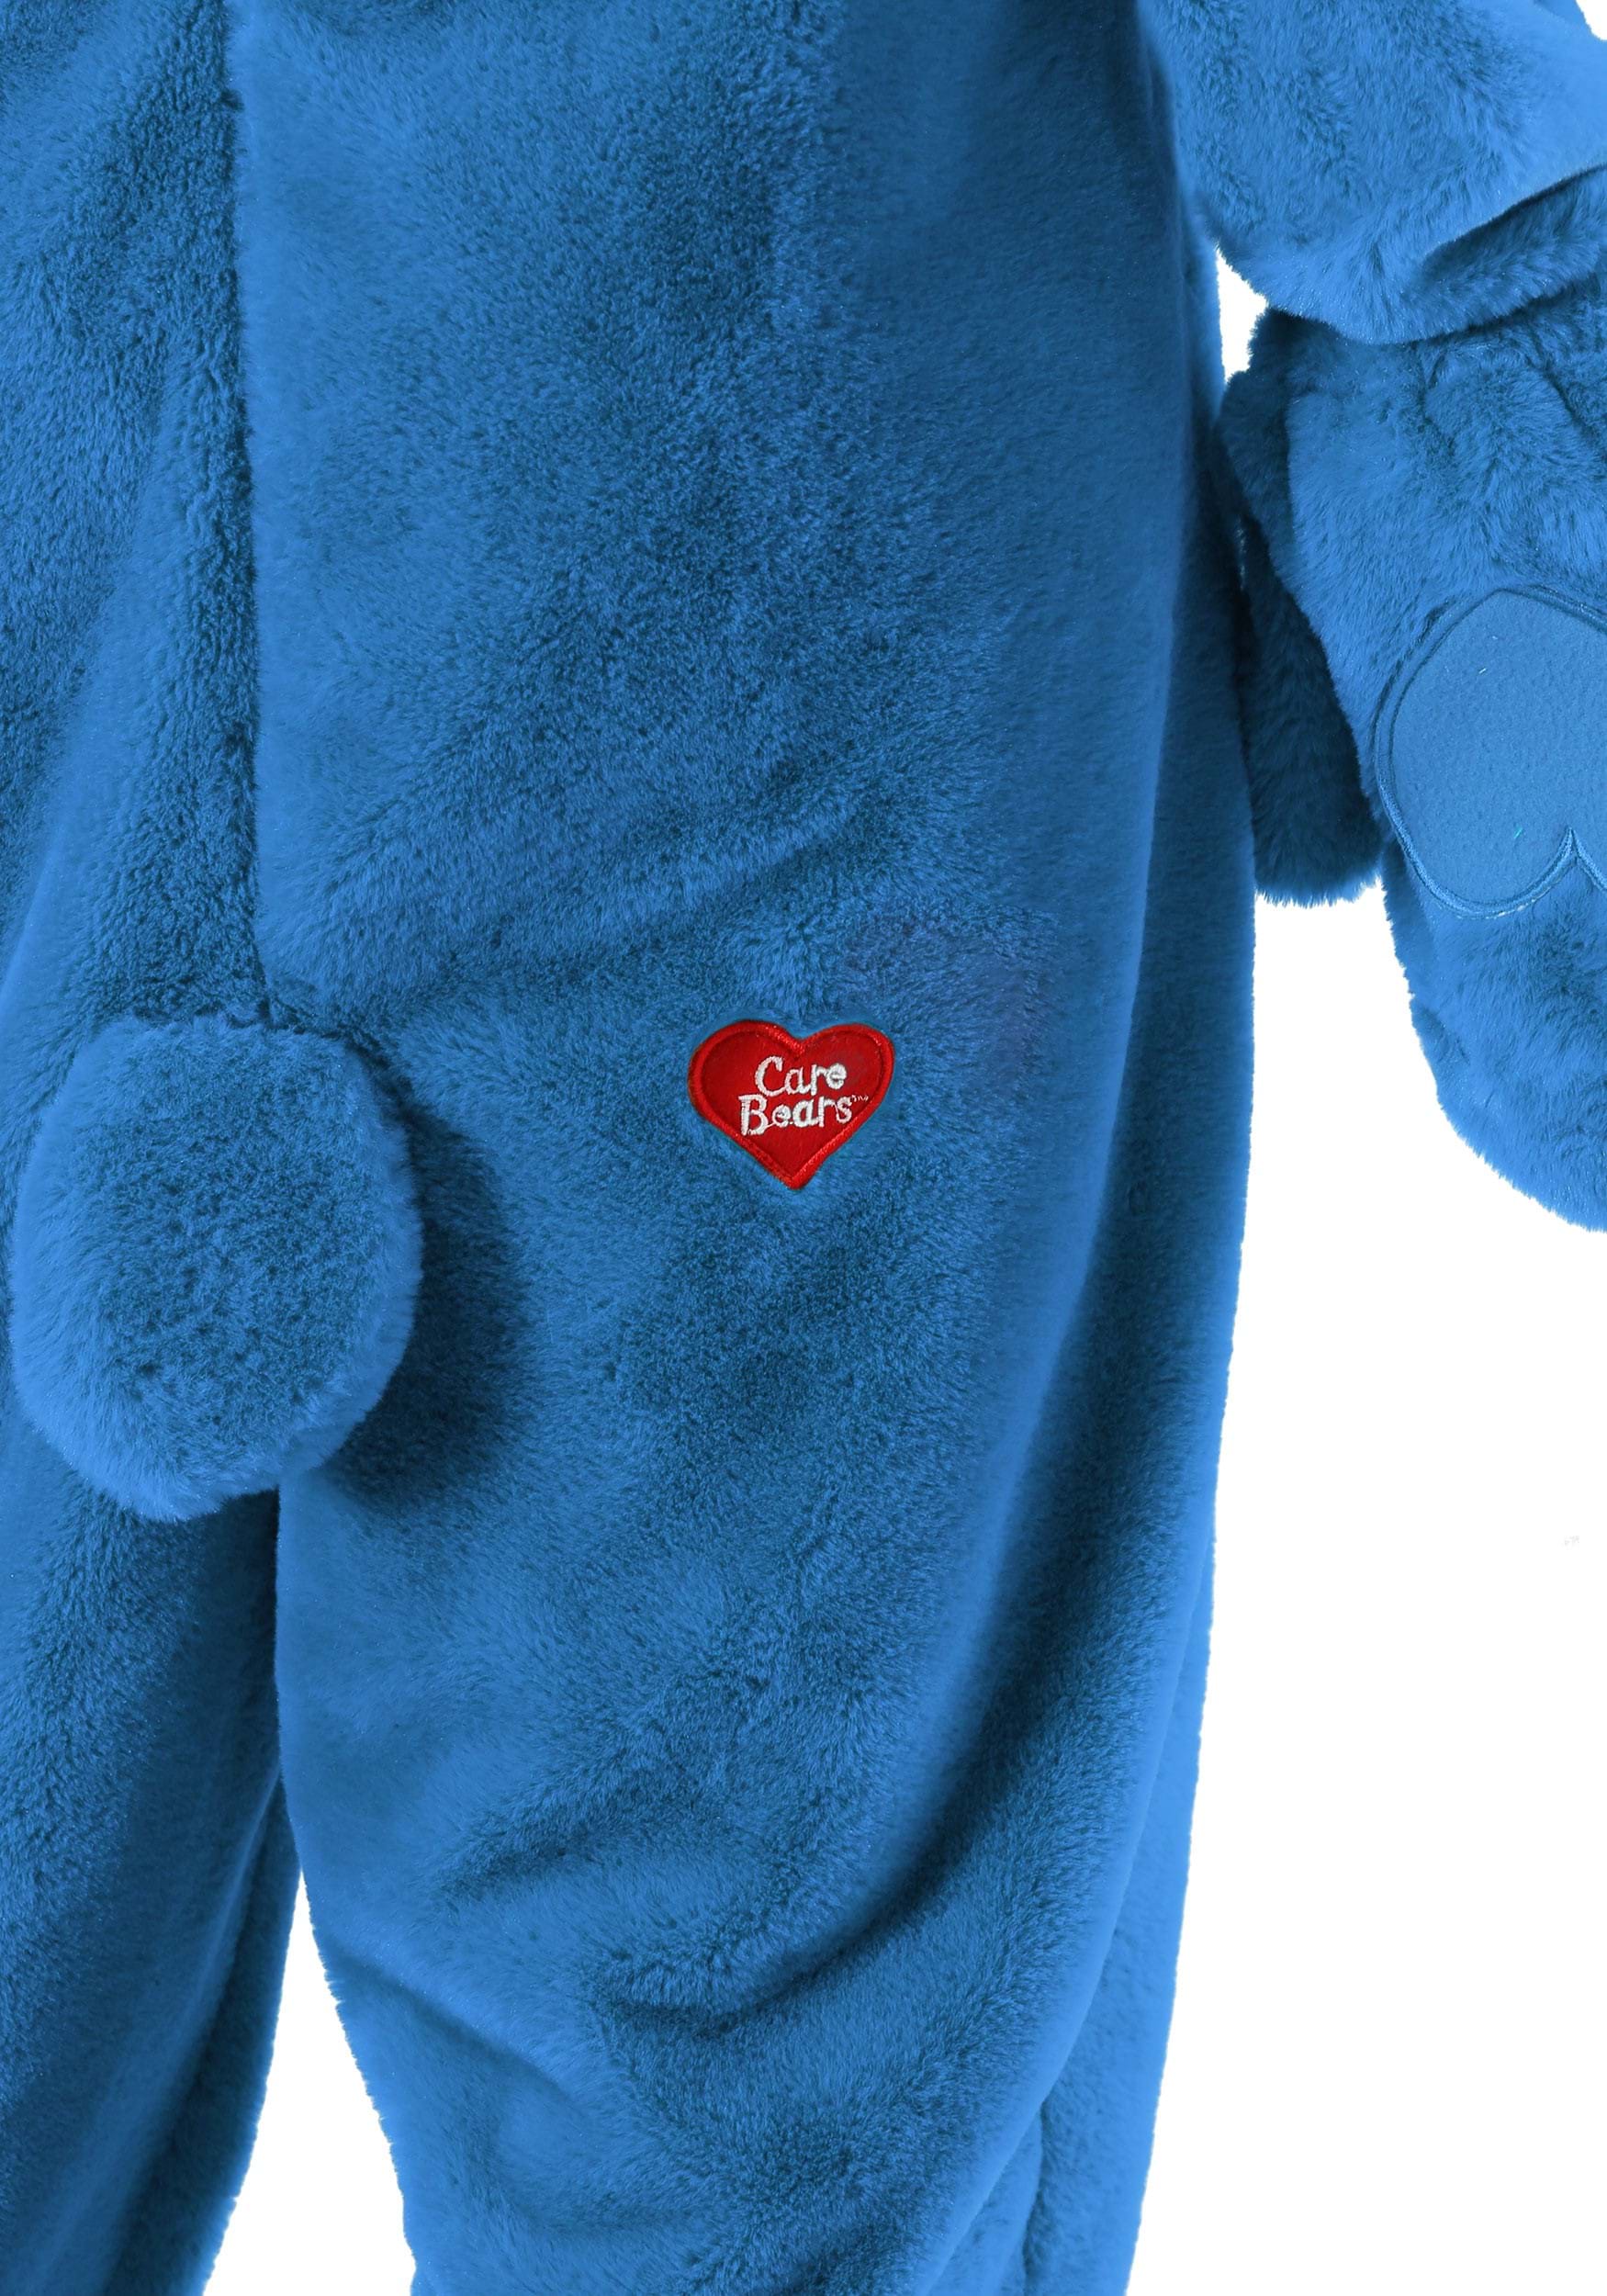 Plus Size Deluxe Care Bears Grumpy Bear Fancy Dress Costume